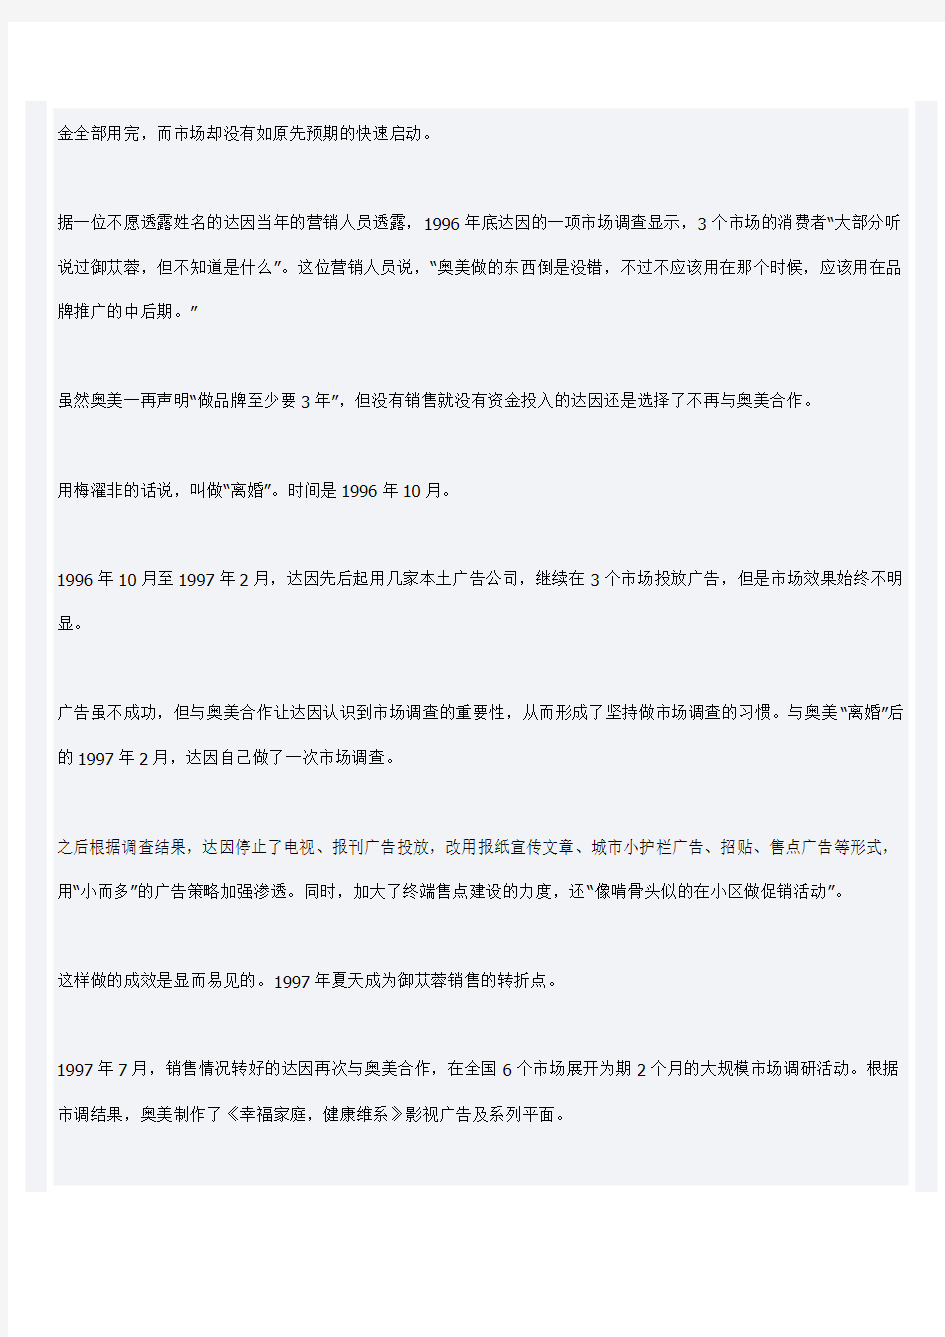 奥美在中国失败的四个营销案例